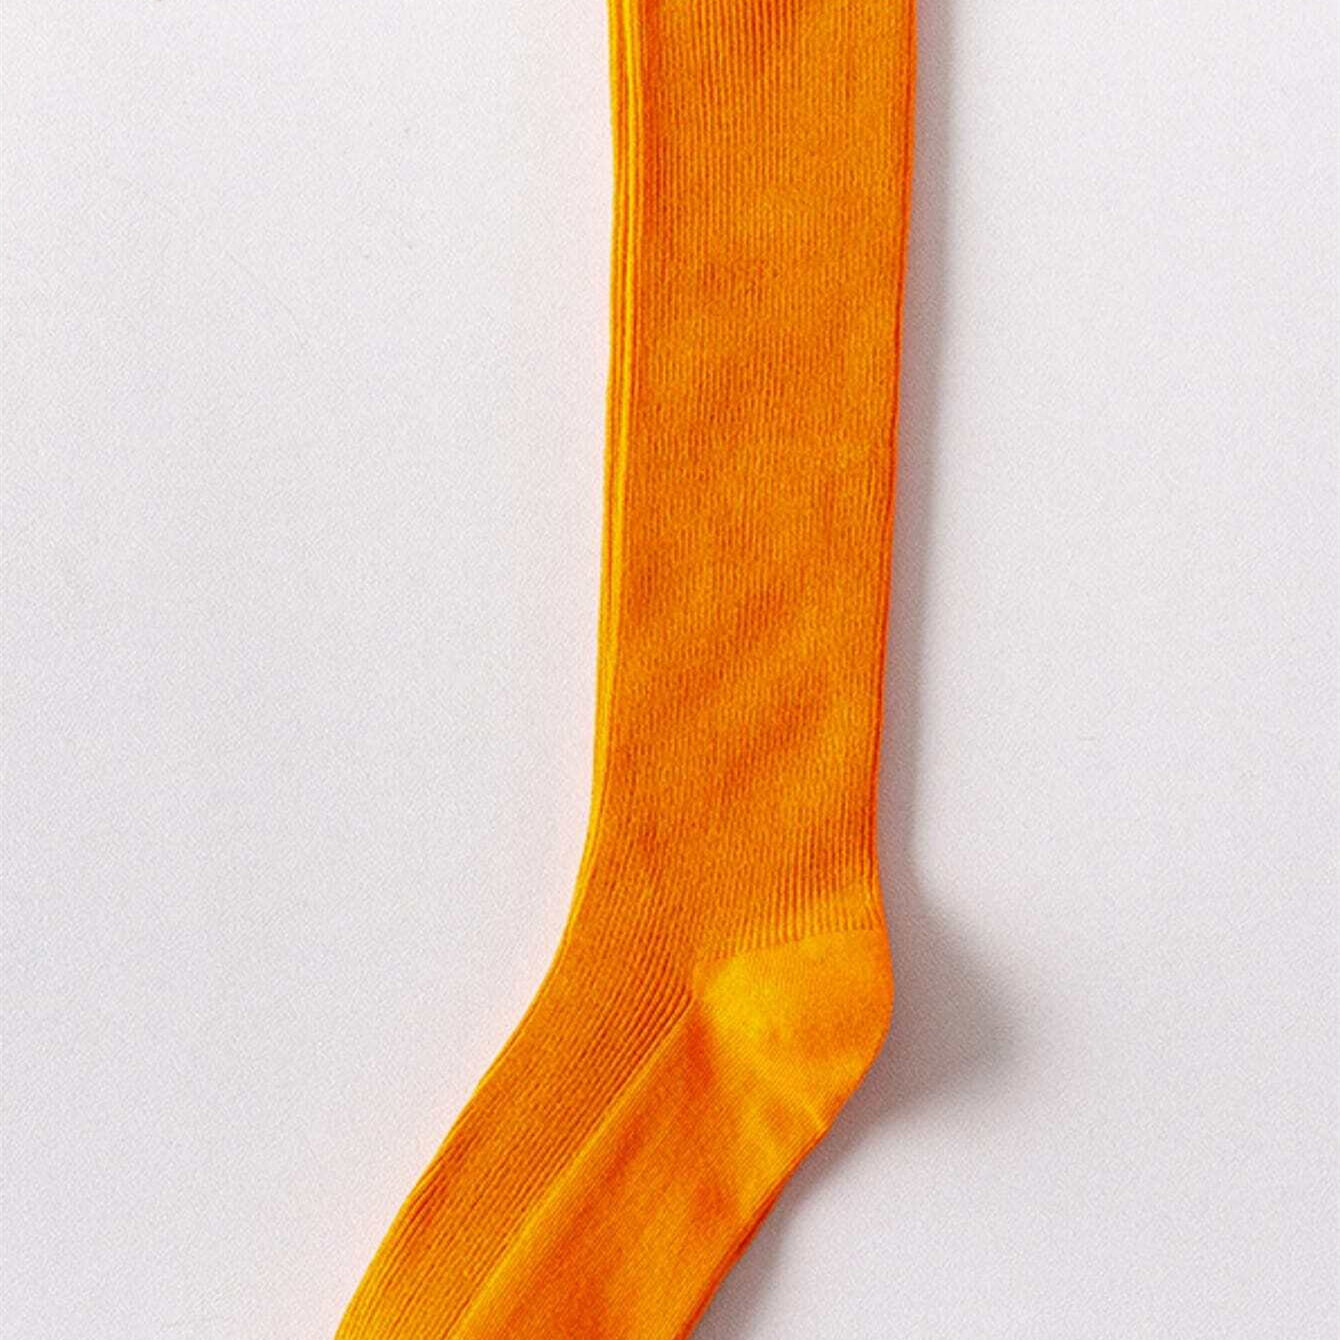 1Pair Women Orange Vintage Neon Colorful Long Socks Knee